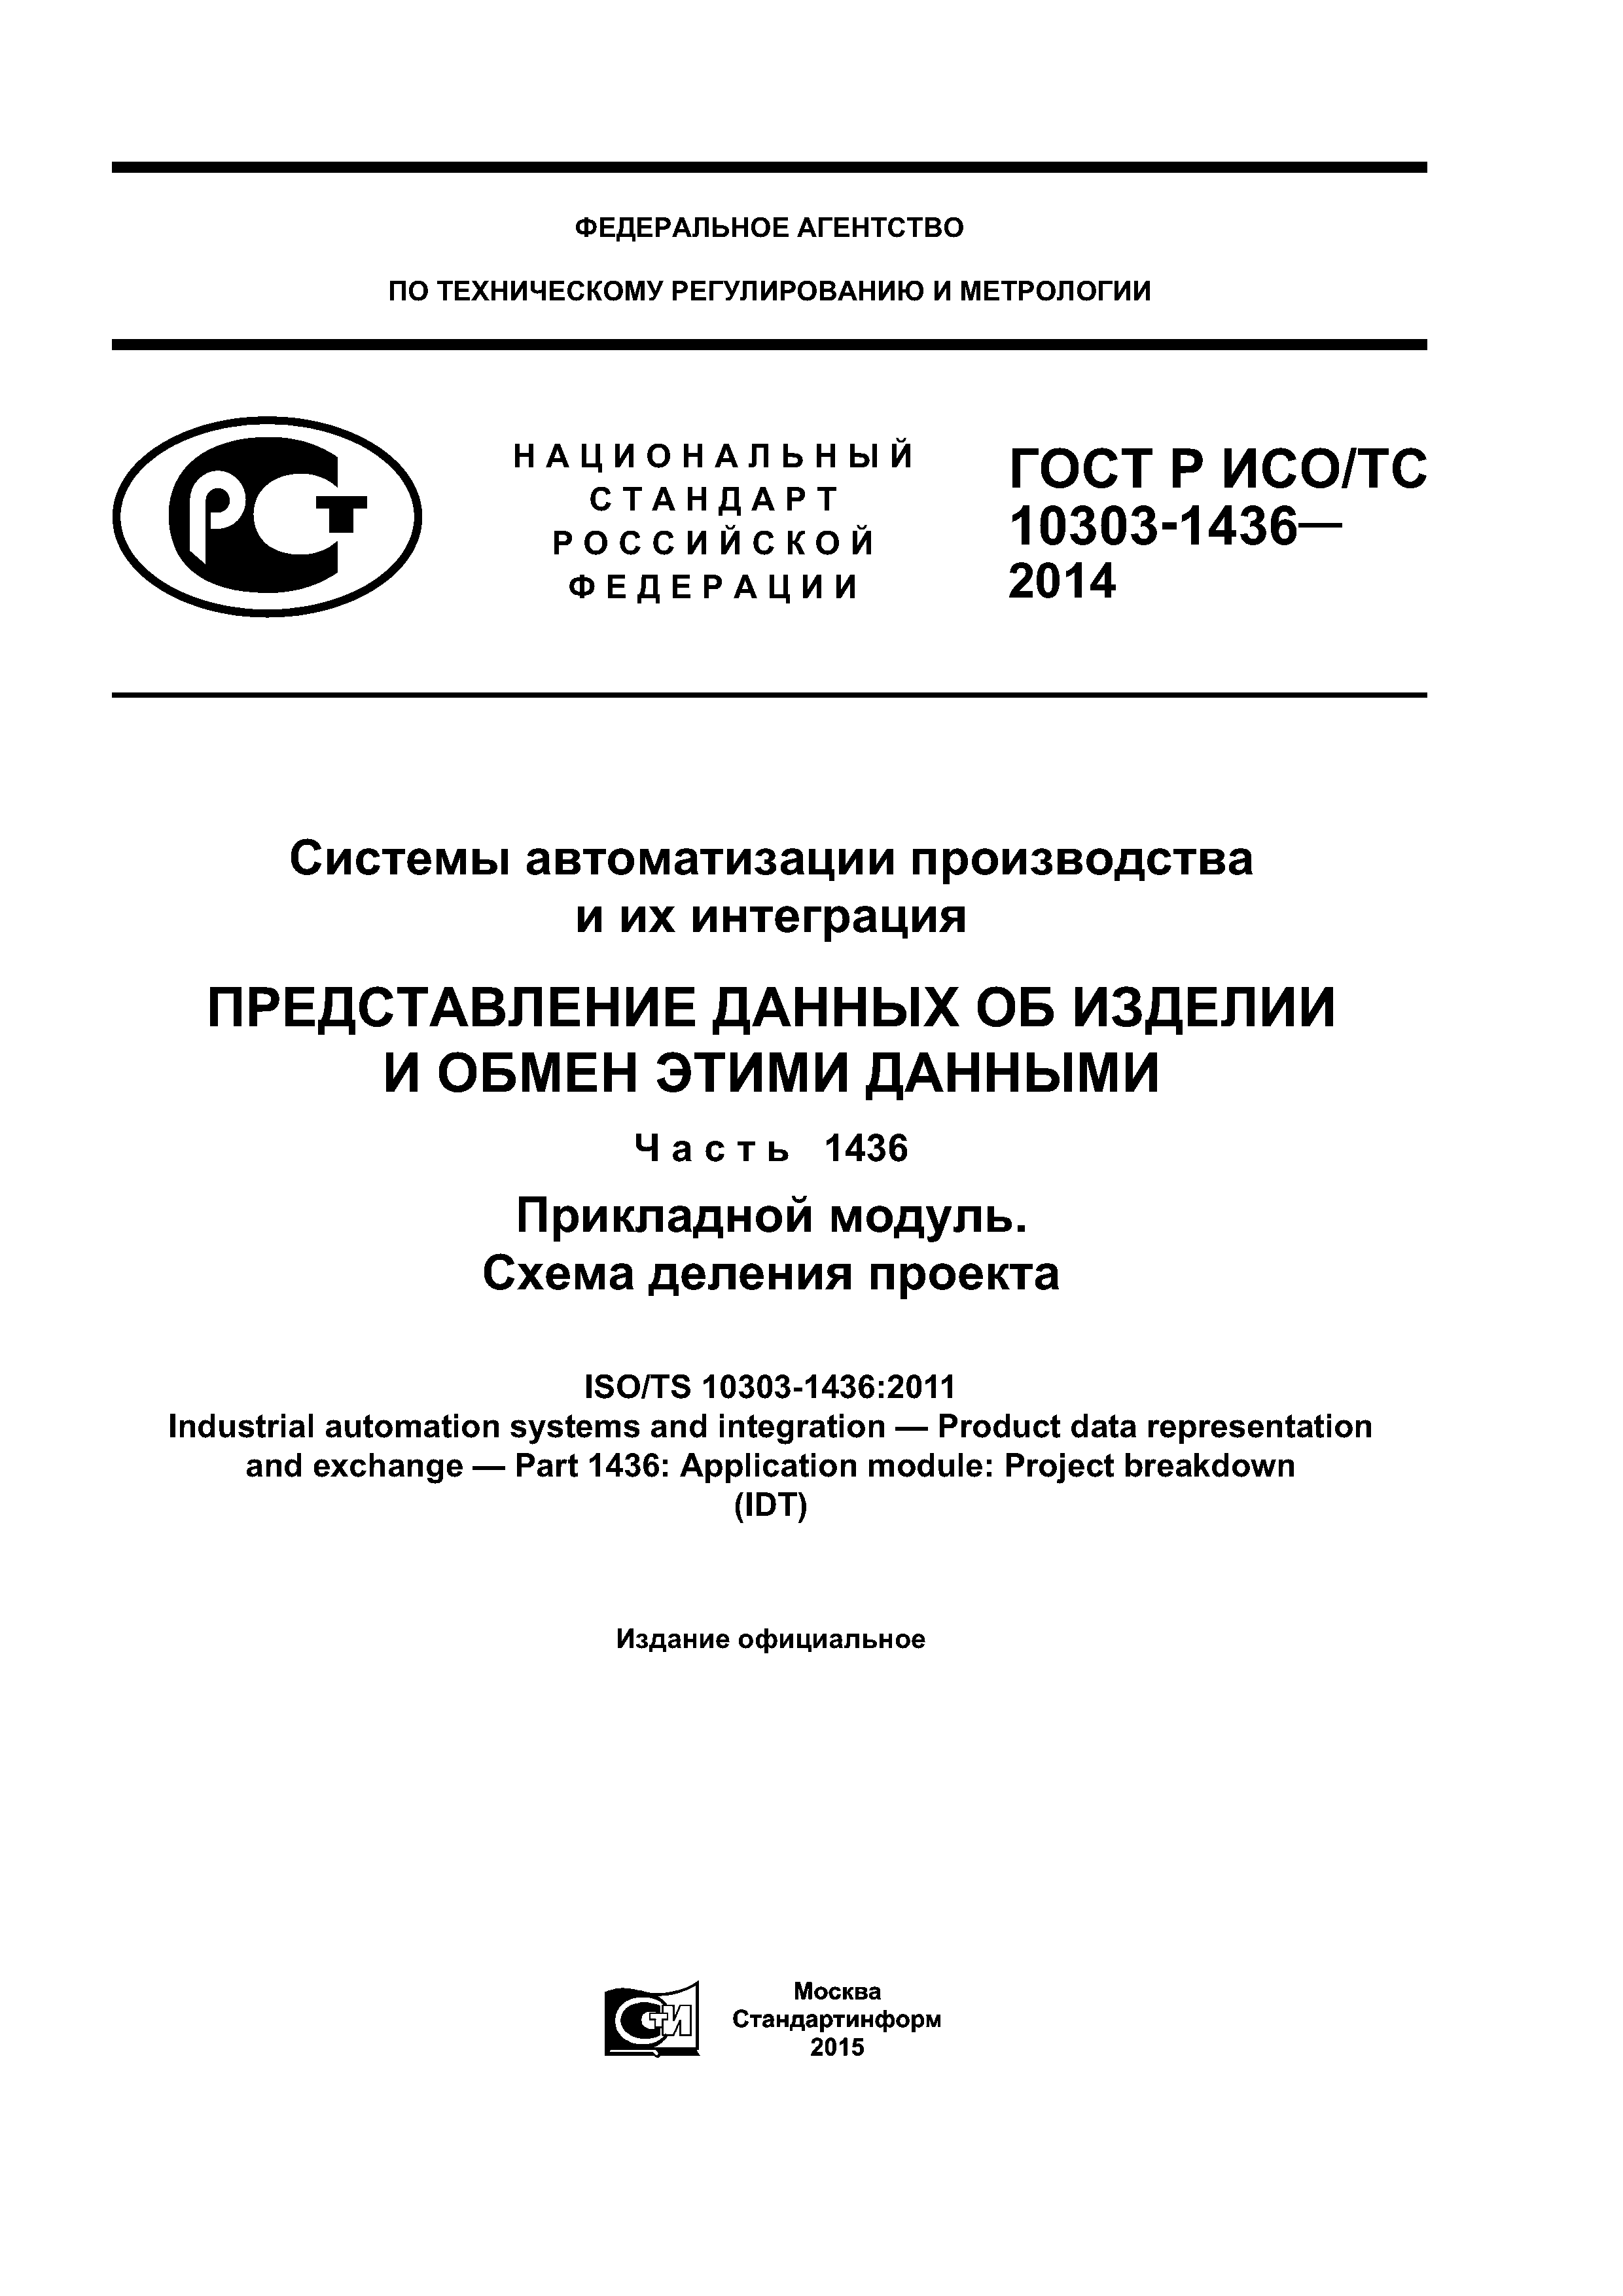 ГОСТ Р ИСО/ТС 10303-1436-2014